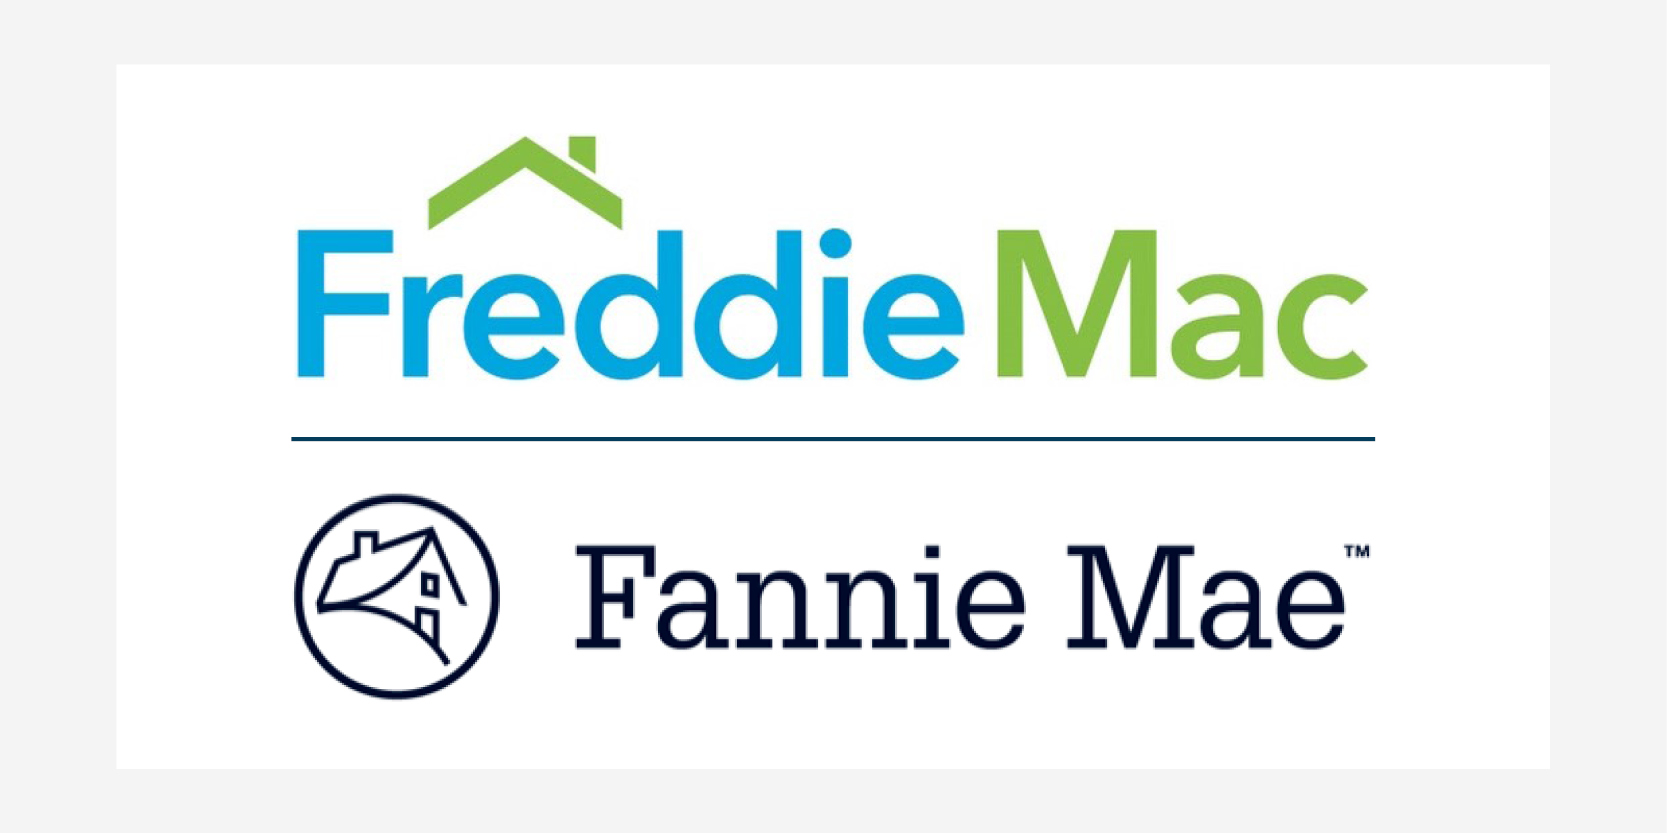 Freddie Mac and Fannie Mae logos